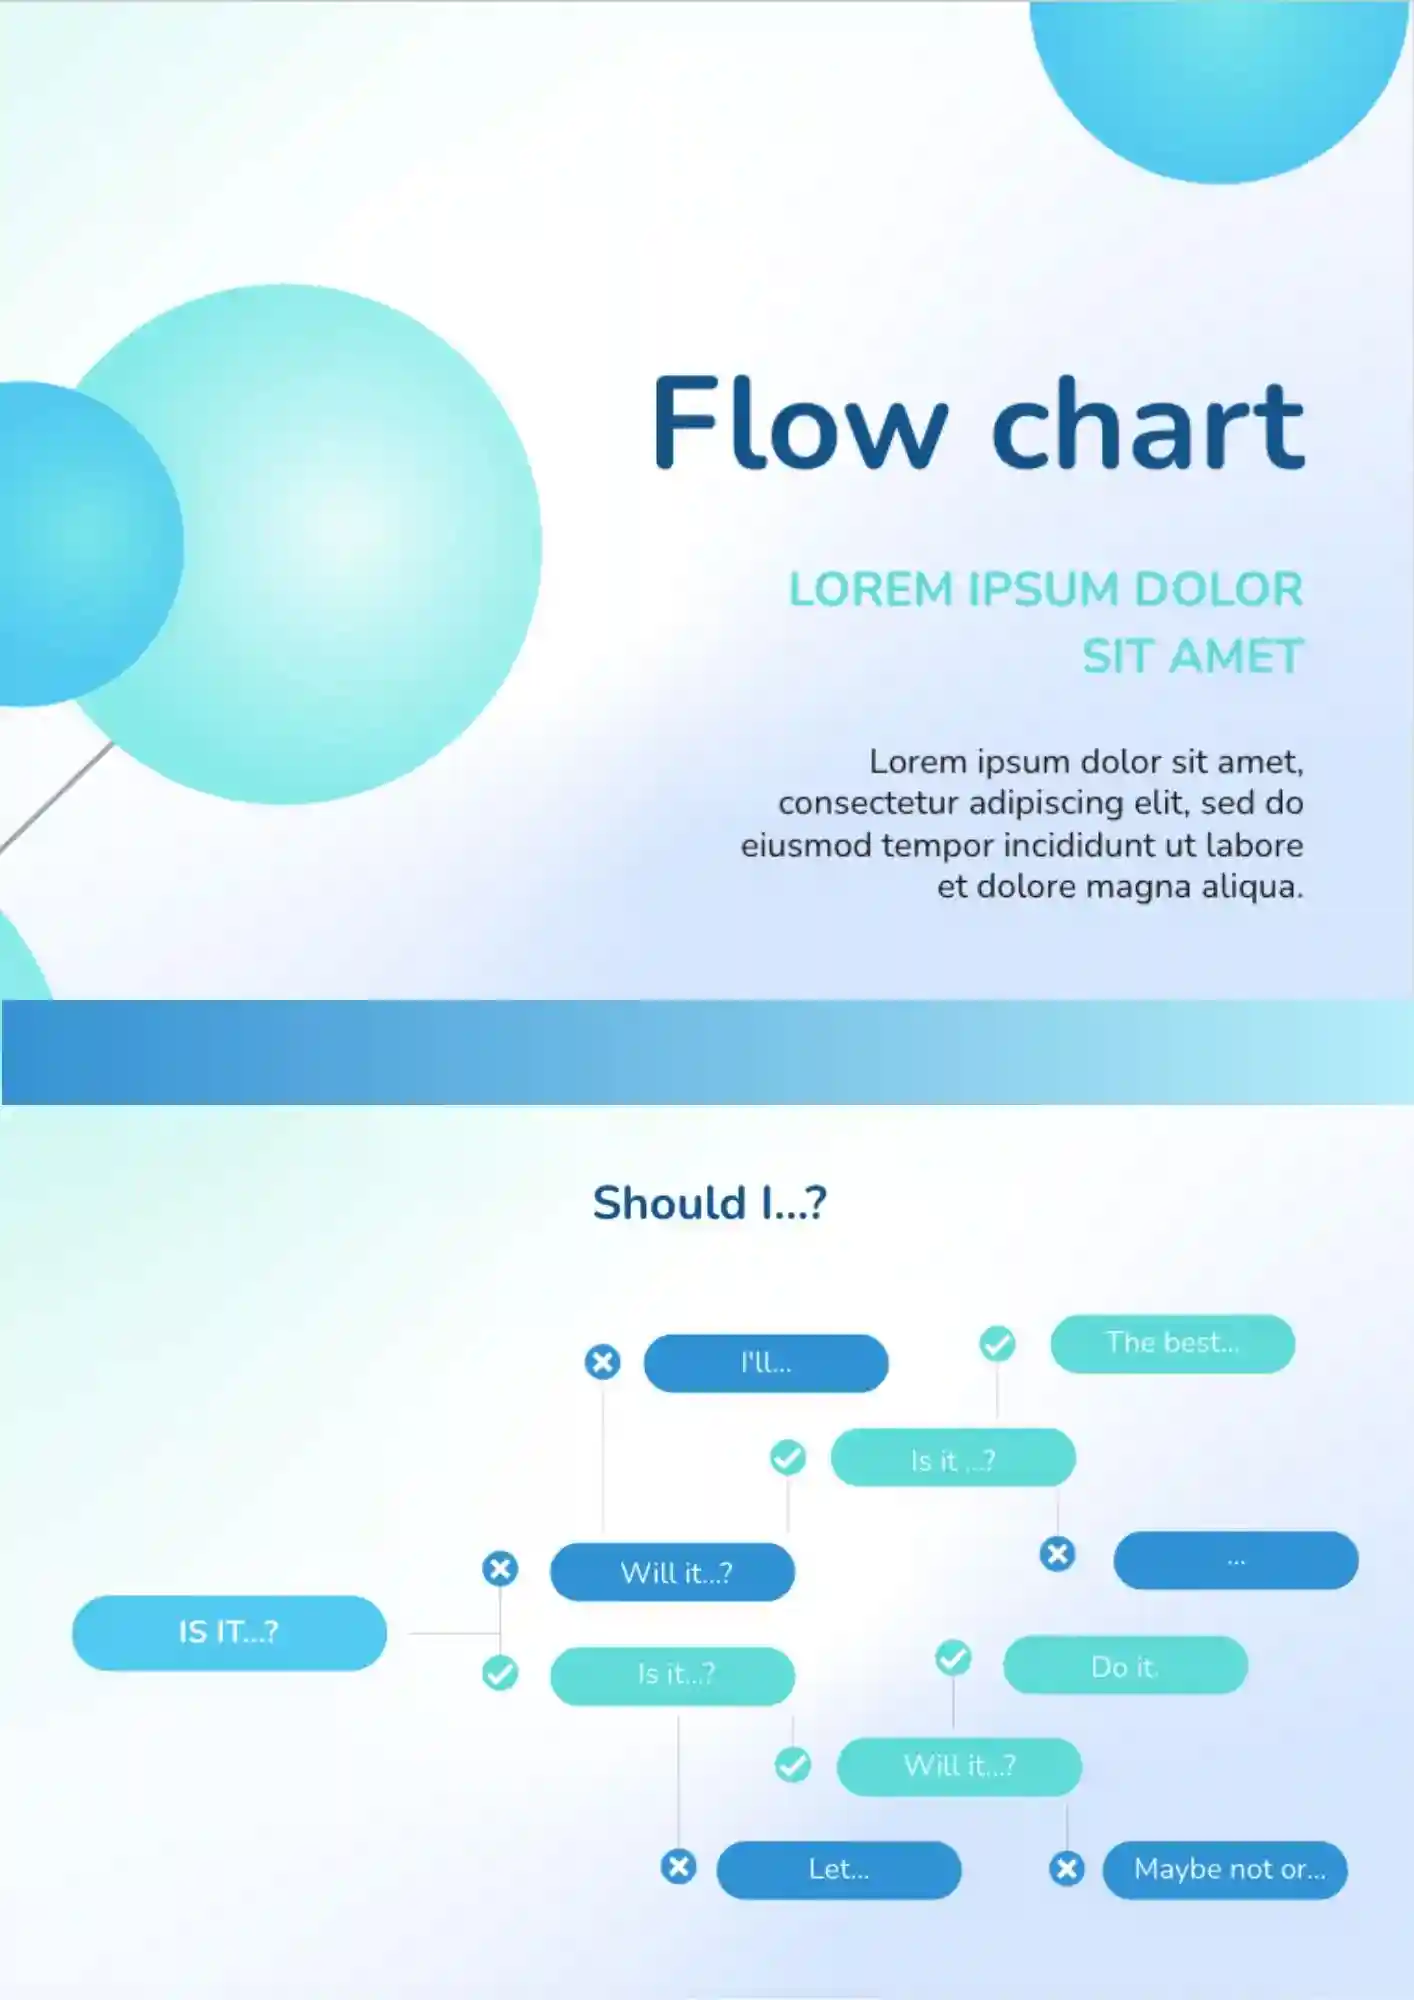 Flow Chart Template